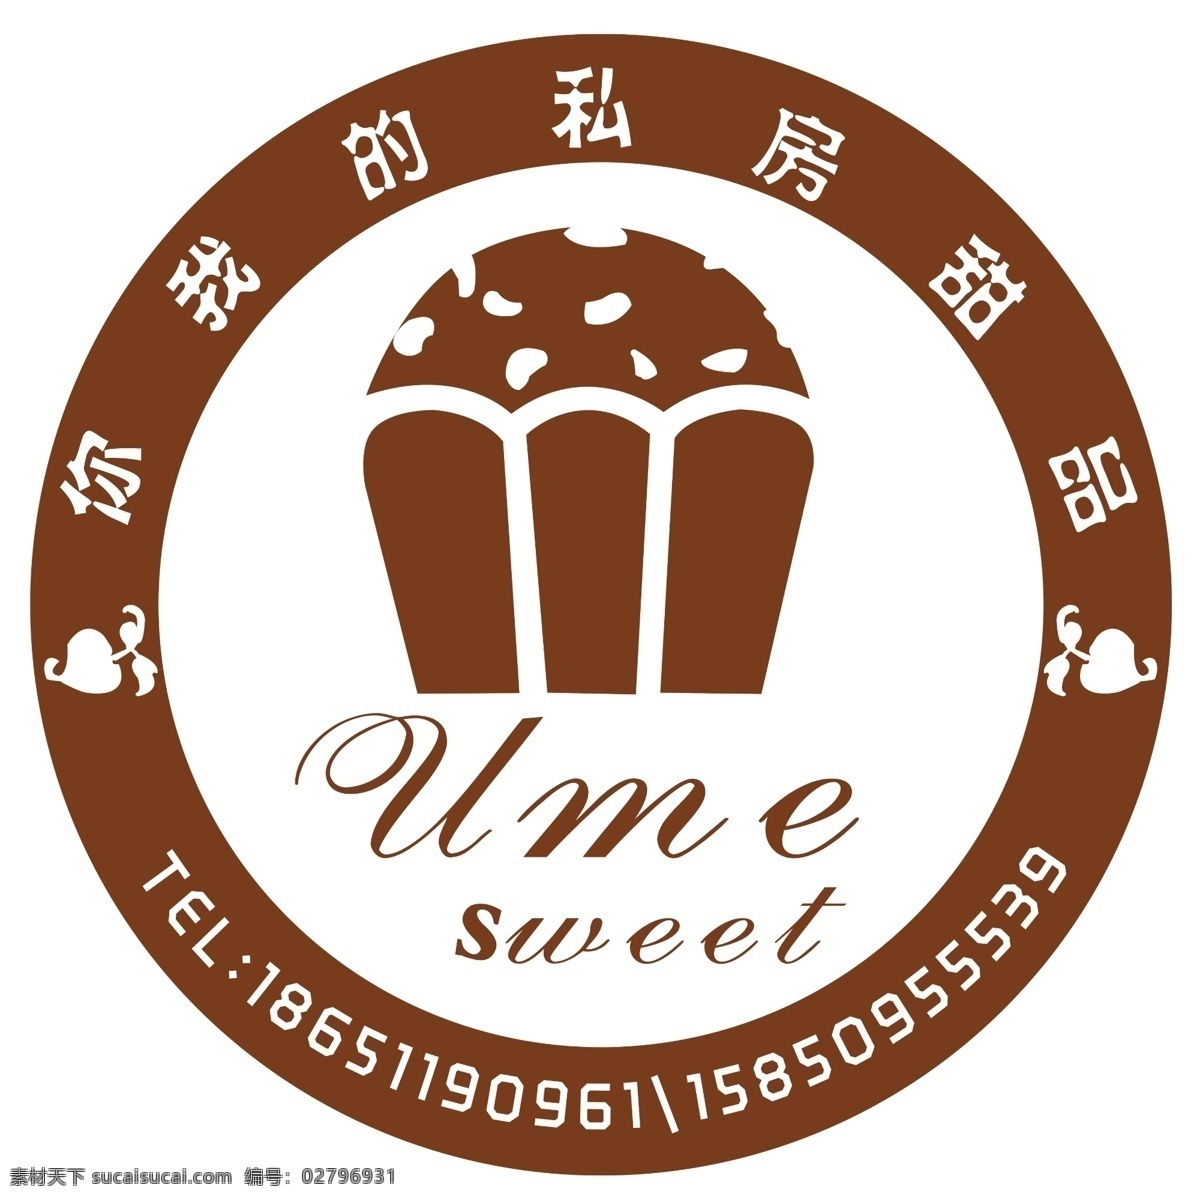 私房甜品 蛋糕 英文 高清logo 可分层 可打字 可变型 私人订制 咖啡甜点 logo设计